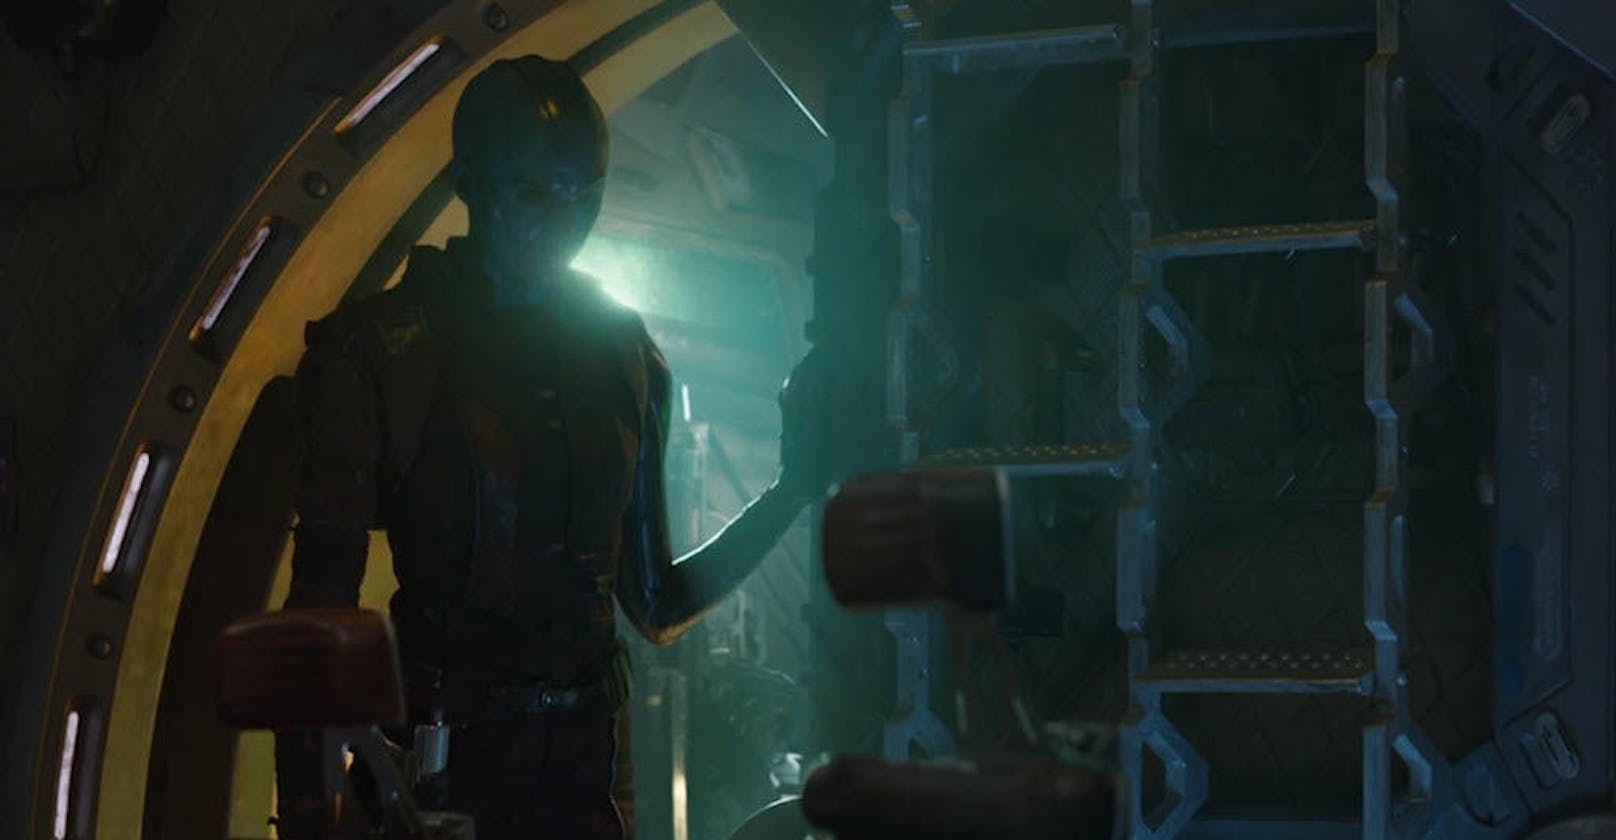 ... Nebula (Karen Gillan). Sie scheint nun mit Iron Man unterwegs zu sein, vermutlich zur Erde. Allerdings meint Tony, er würde "orientierungslos durch's Weltall treiben". Seltsam, denn Nebula sollte mit der Technologie der Milano vertraut sein und sie steuern können. Freilich wissen wir nicht, wie lange das Raumschiff bereits unterwegs ist, es könnten sogar mehrere Jahre sein.